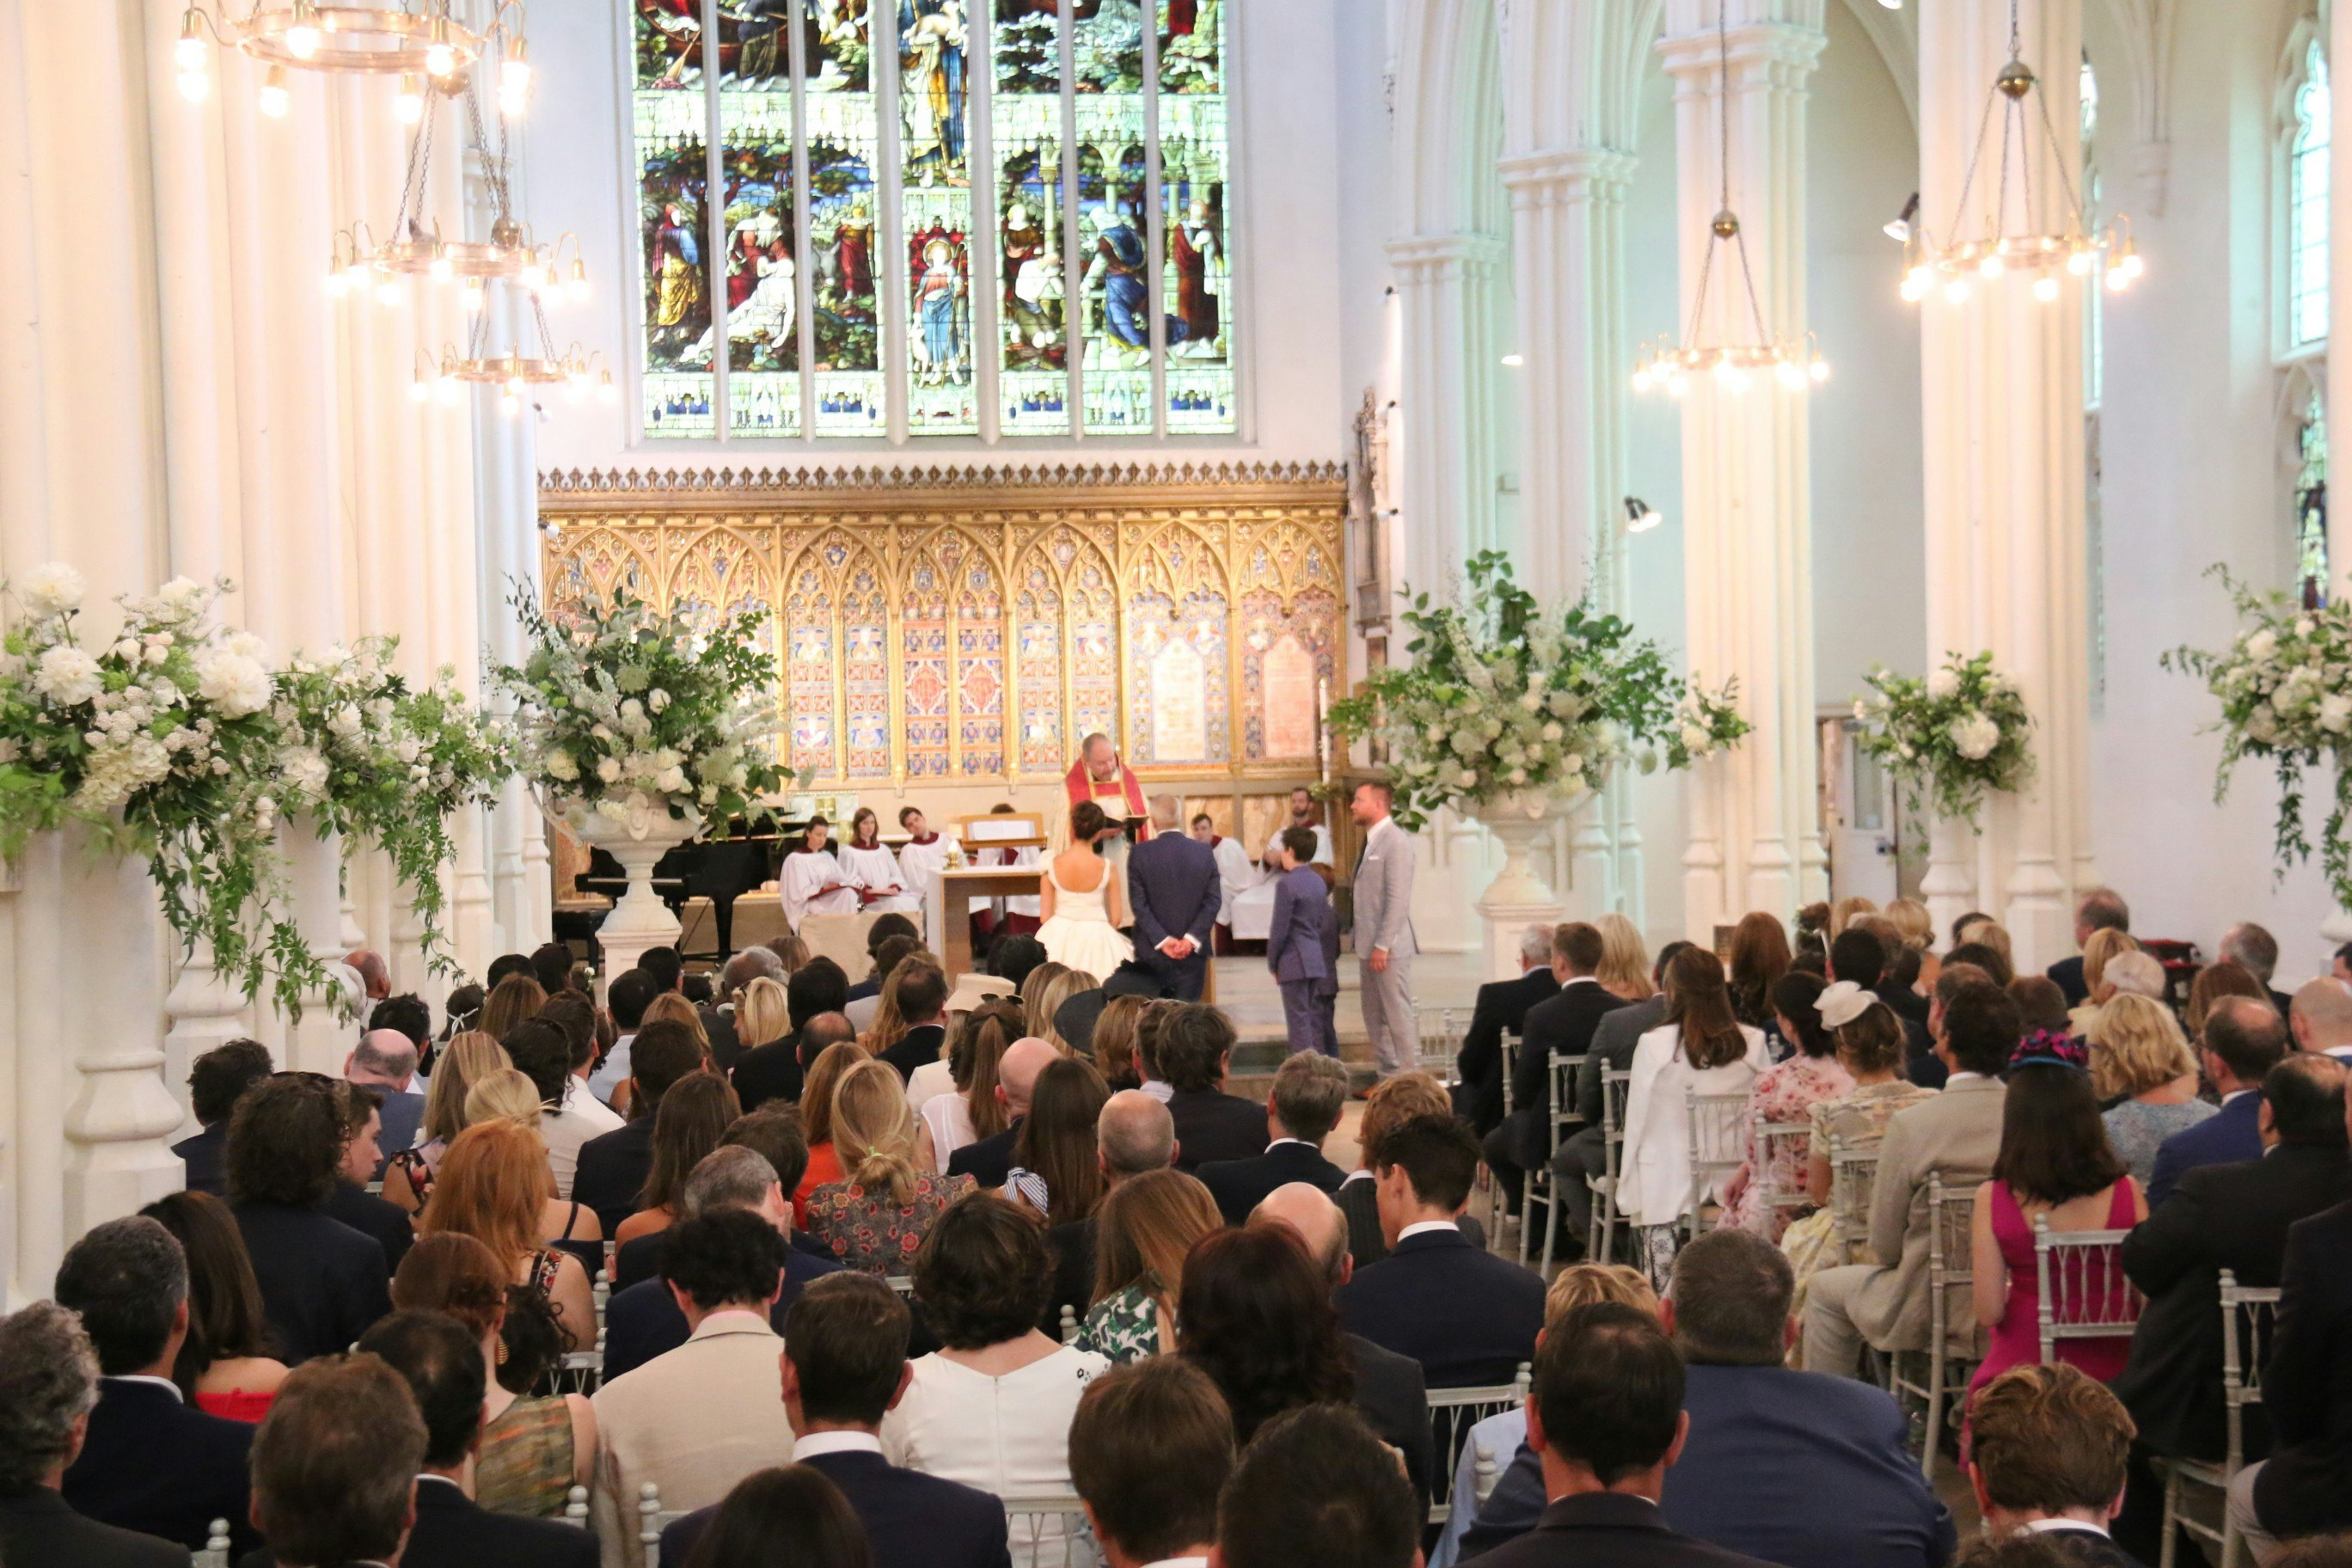 Chapel Wedding Venues in London - St John's Hyde Park